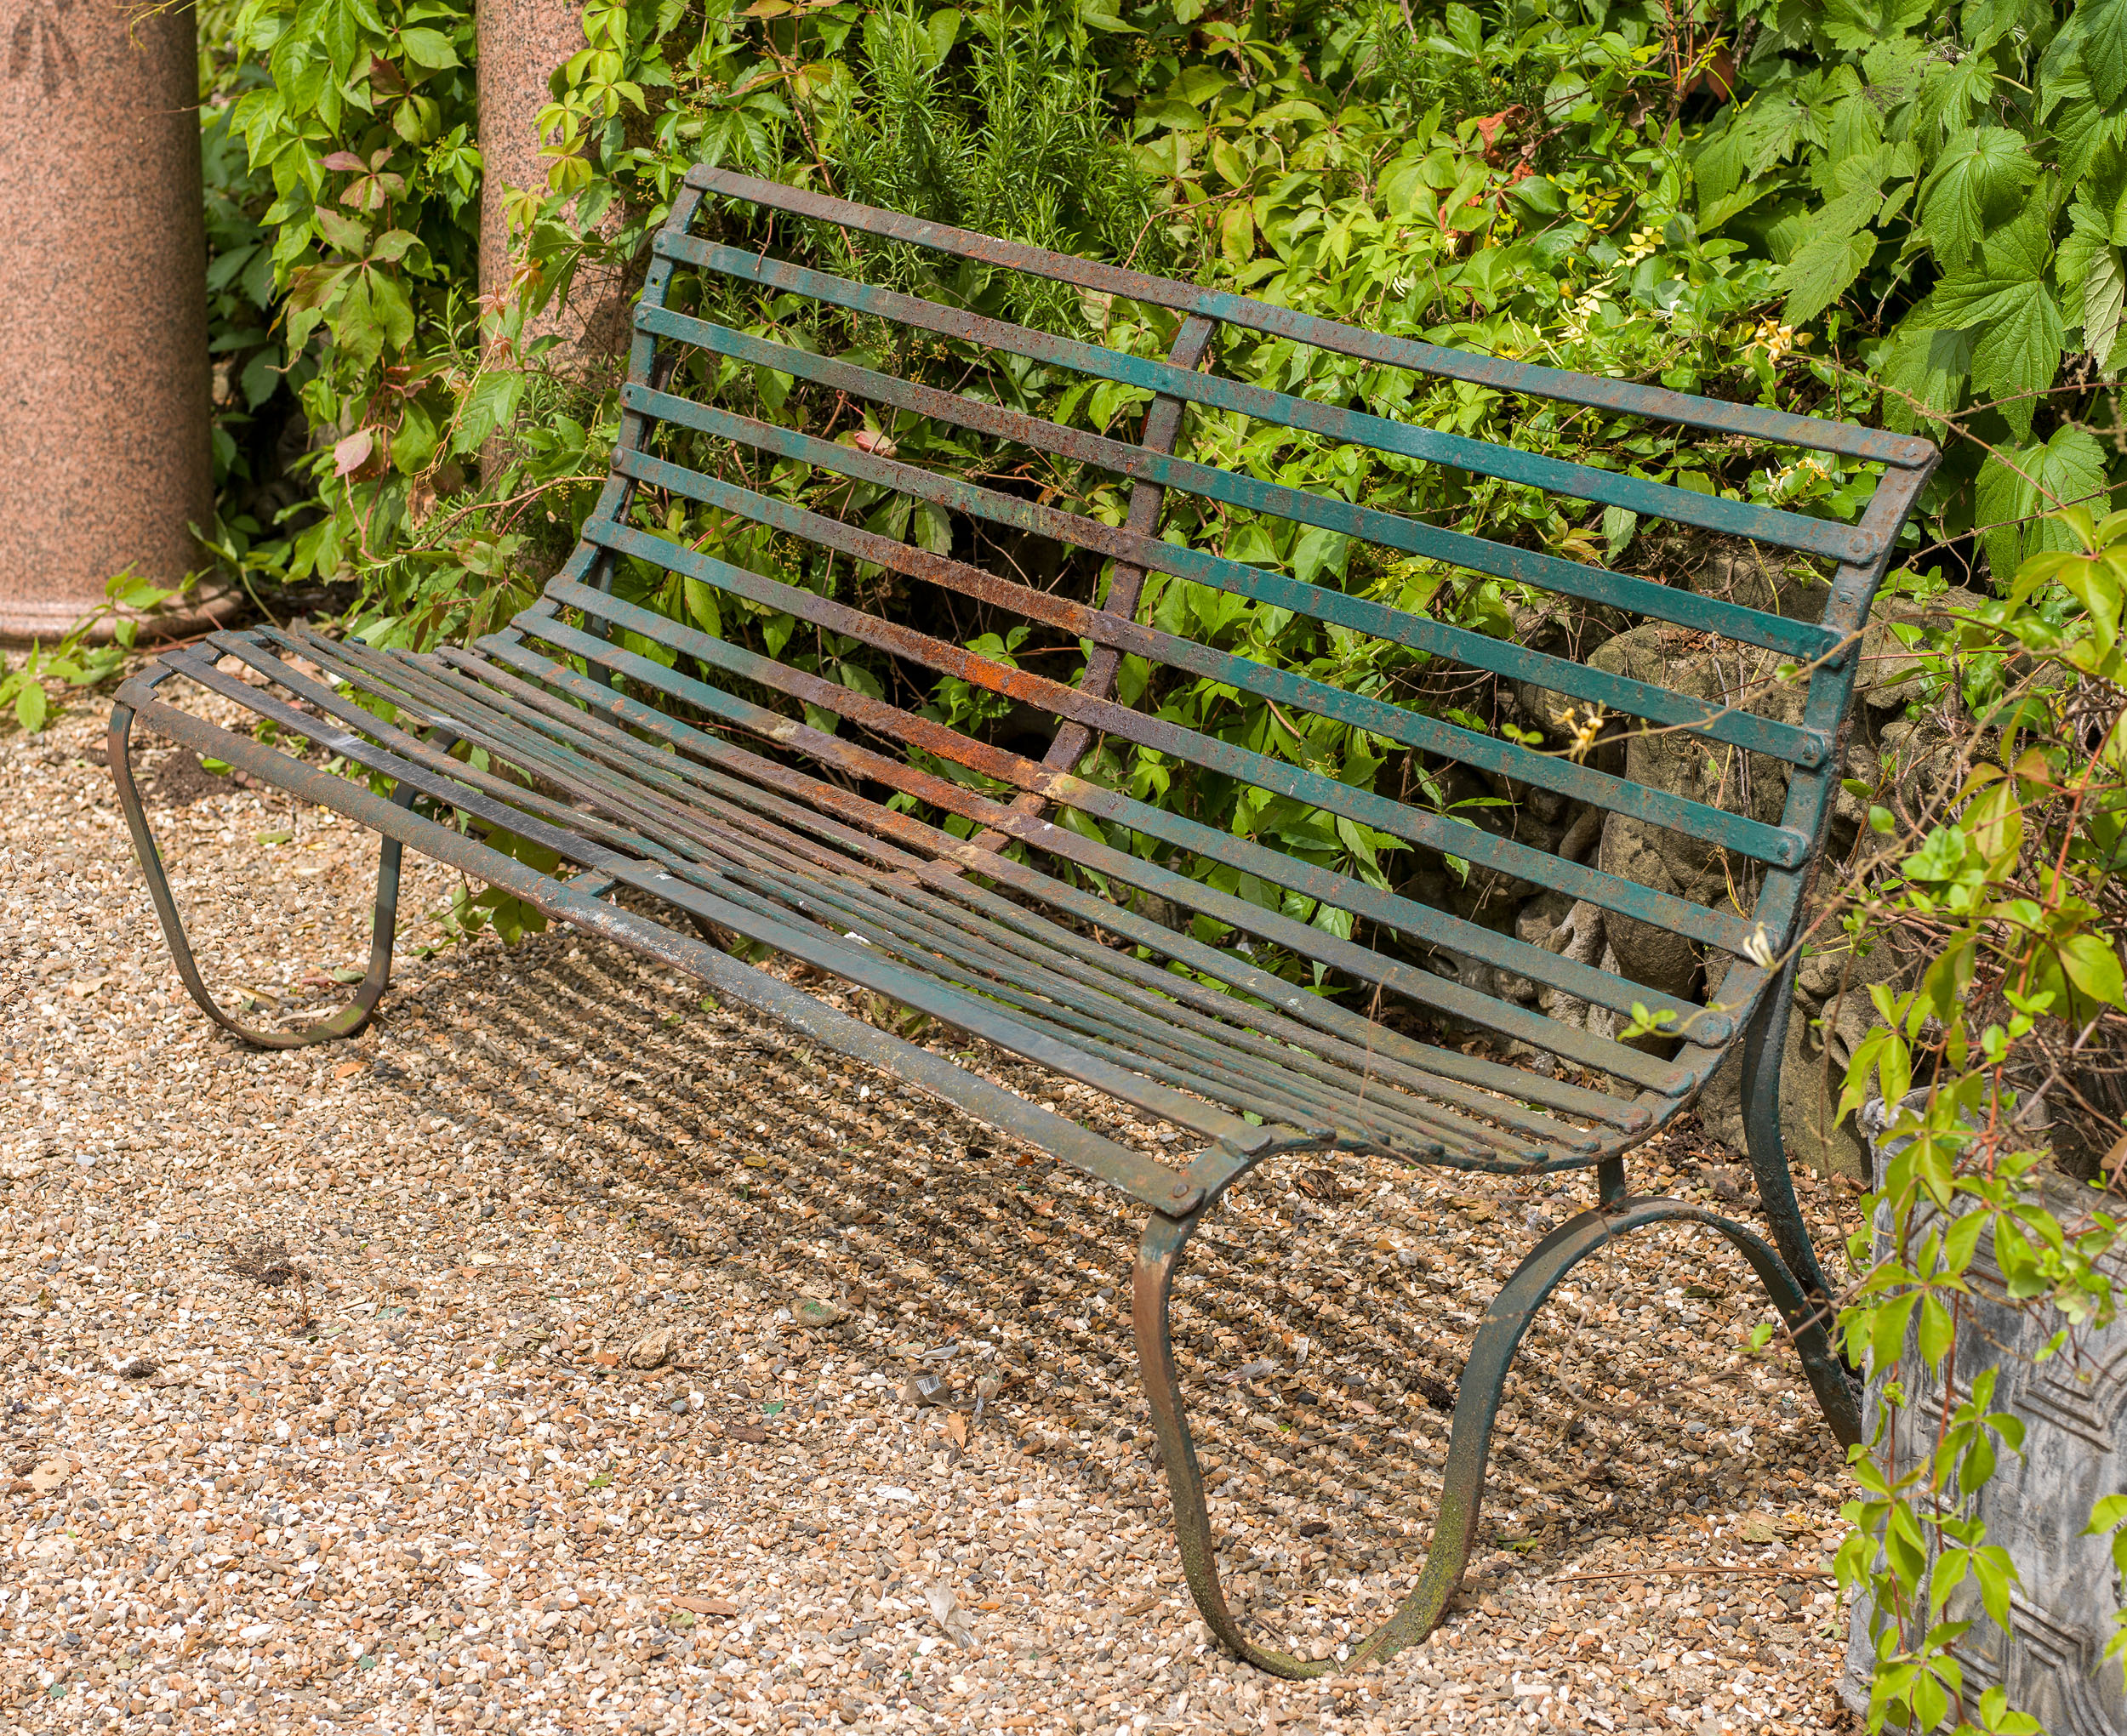 A Victorian wrought iron garden bench

